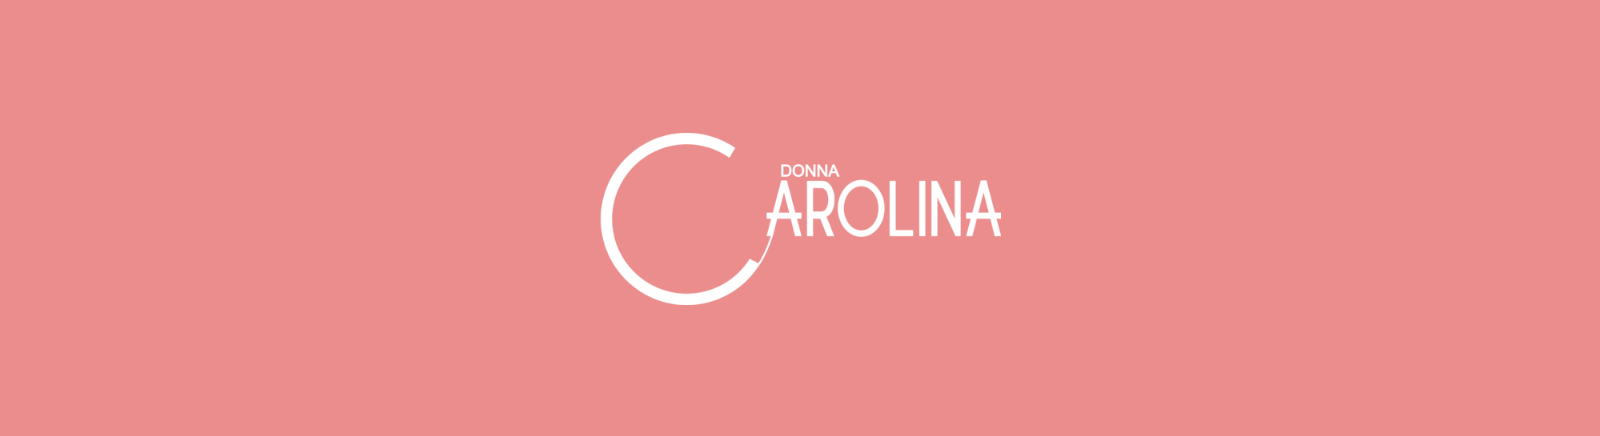 Donna Carolina Schuhe online kaufen im Prange Schuhe Shop